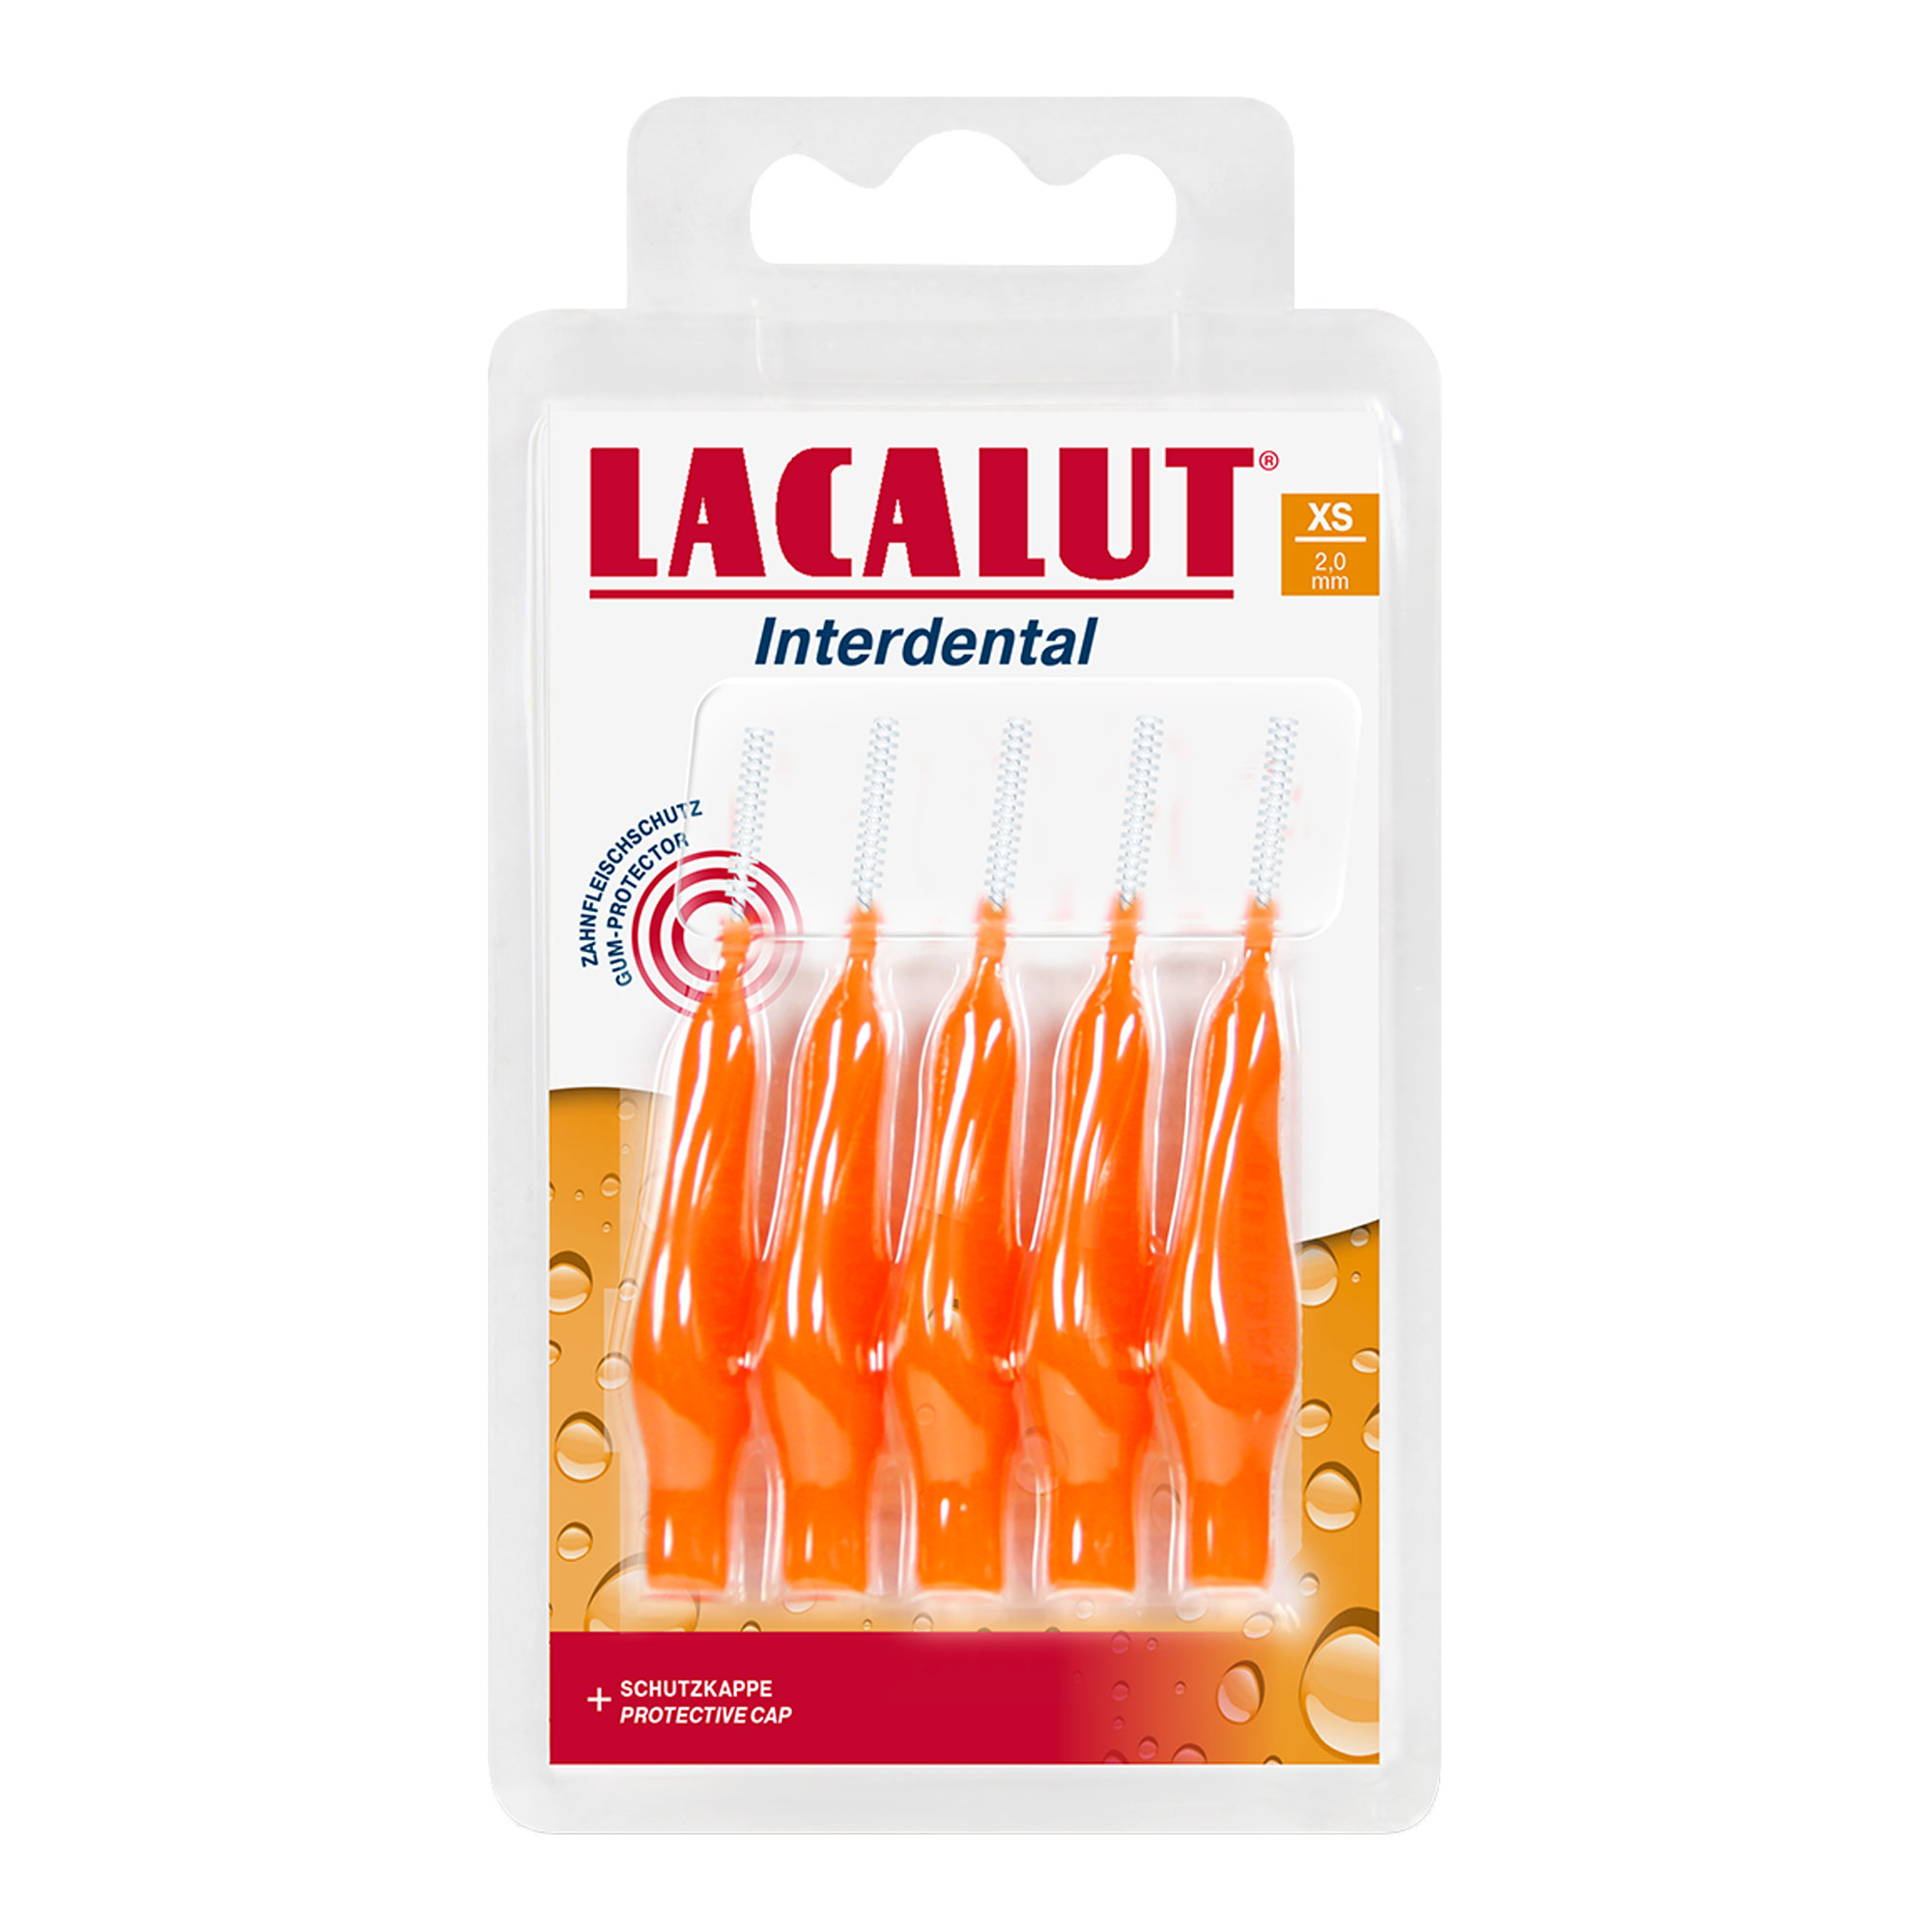 Lacalut Interdental ist besonders für die Reinigung von Zahnspangen und Prothesen geeignet.